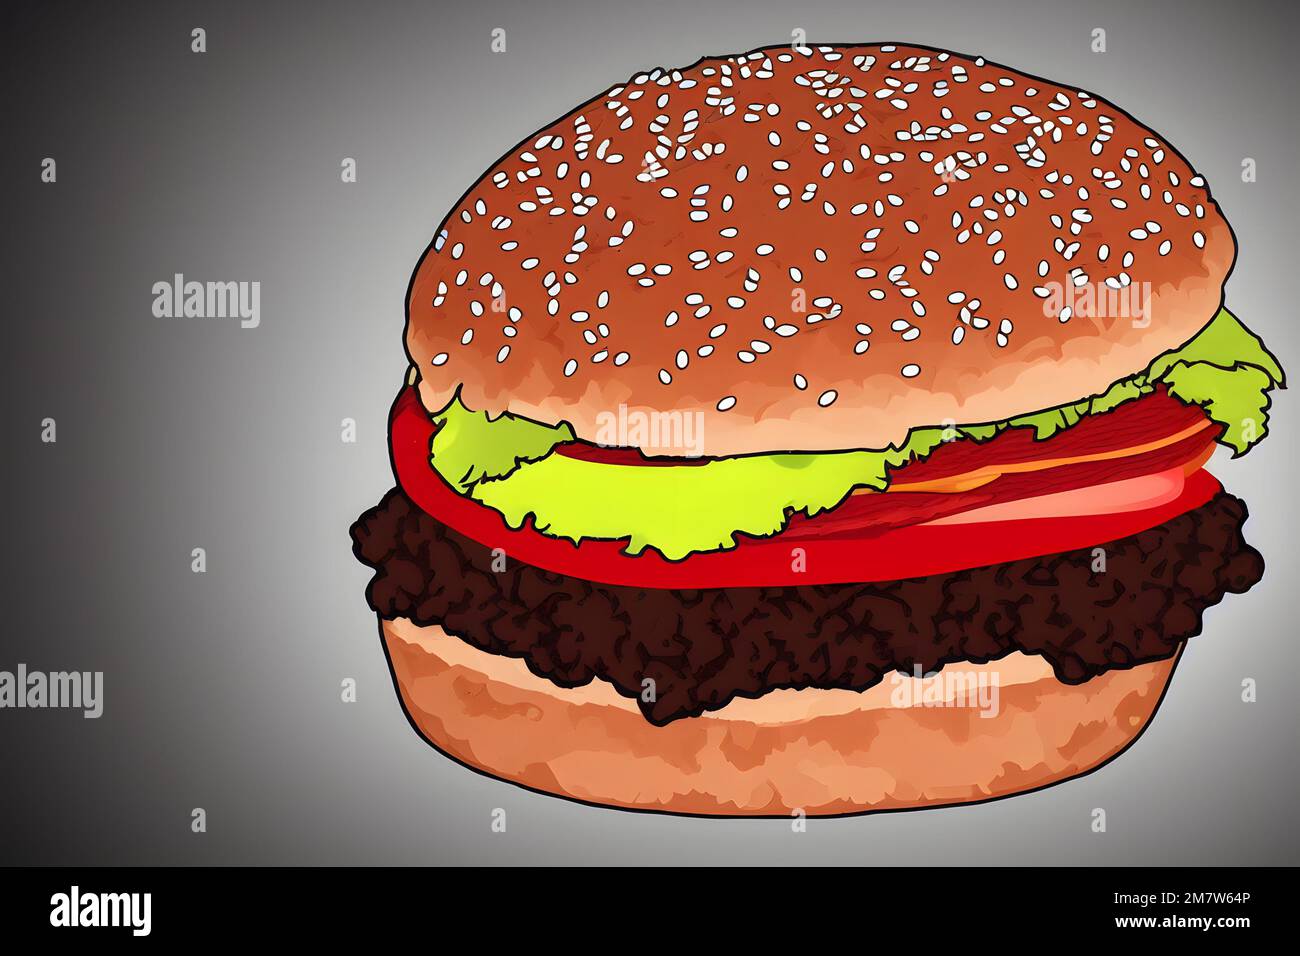 Illustrazione di hamburger in stile minimalista, un classico fast food Foto Stock